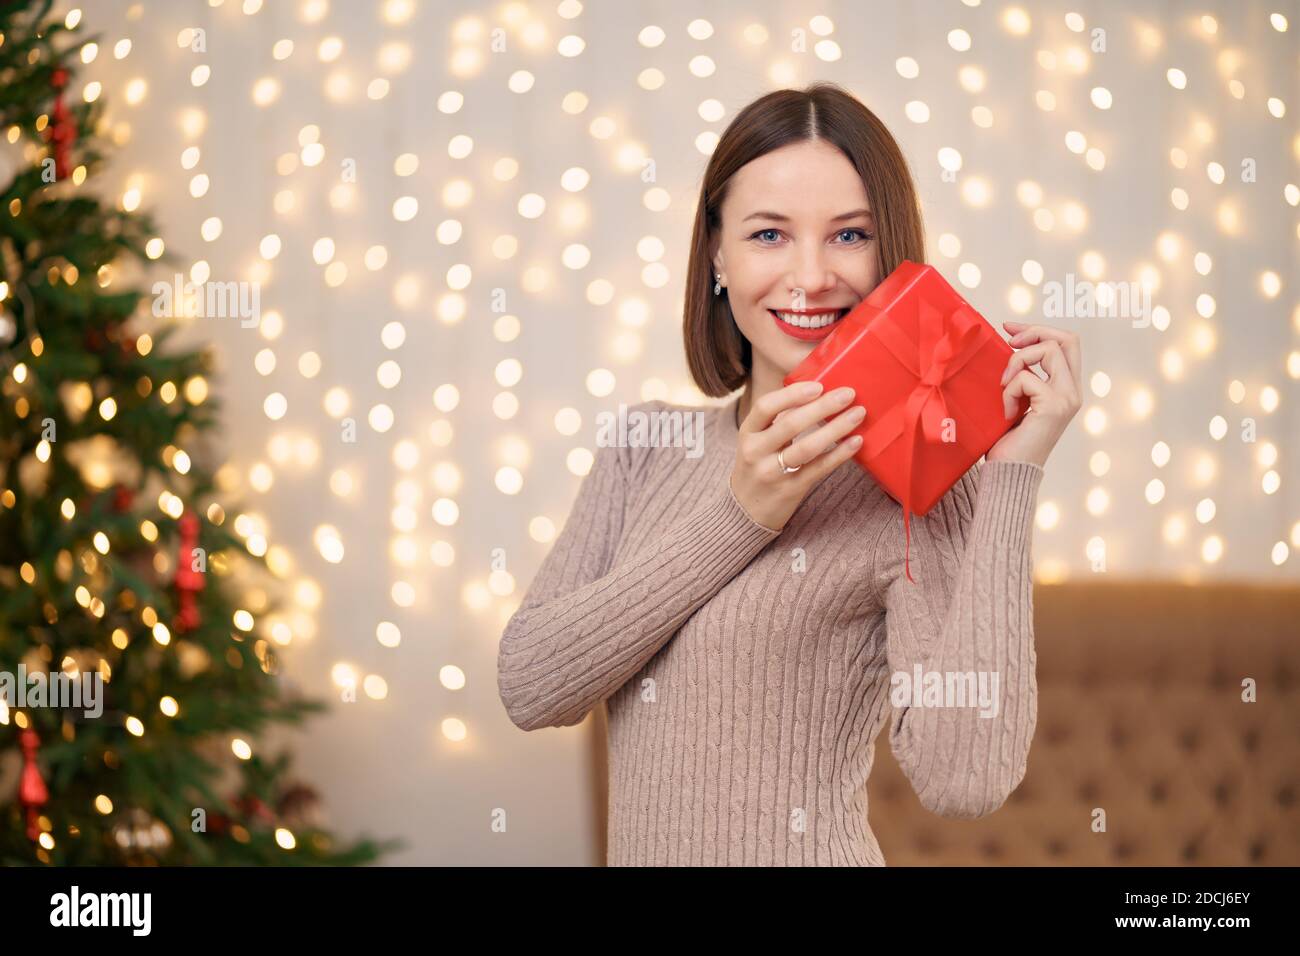 Portrait de jeune femme heureuse lèvres rouges regardant la boîte cadeau emballée. Gros plan la femme satisfaite a reçu la boîte actuelle. Arrière-plan des lumières de Noël festives Banque D'Images